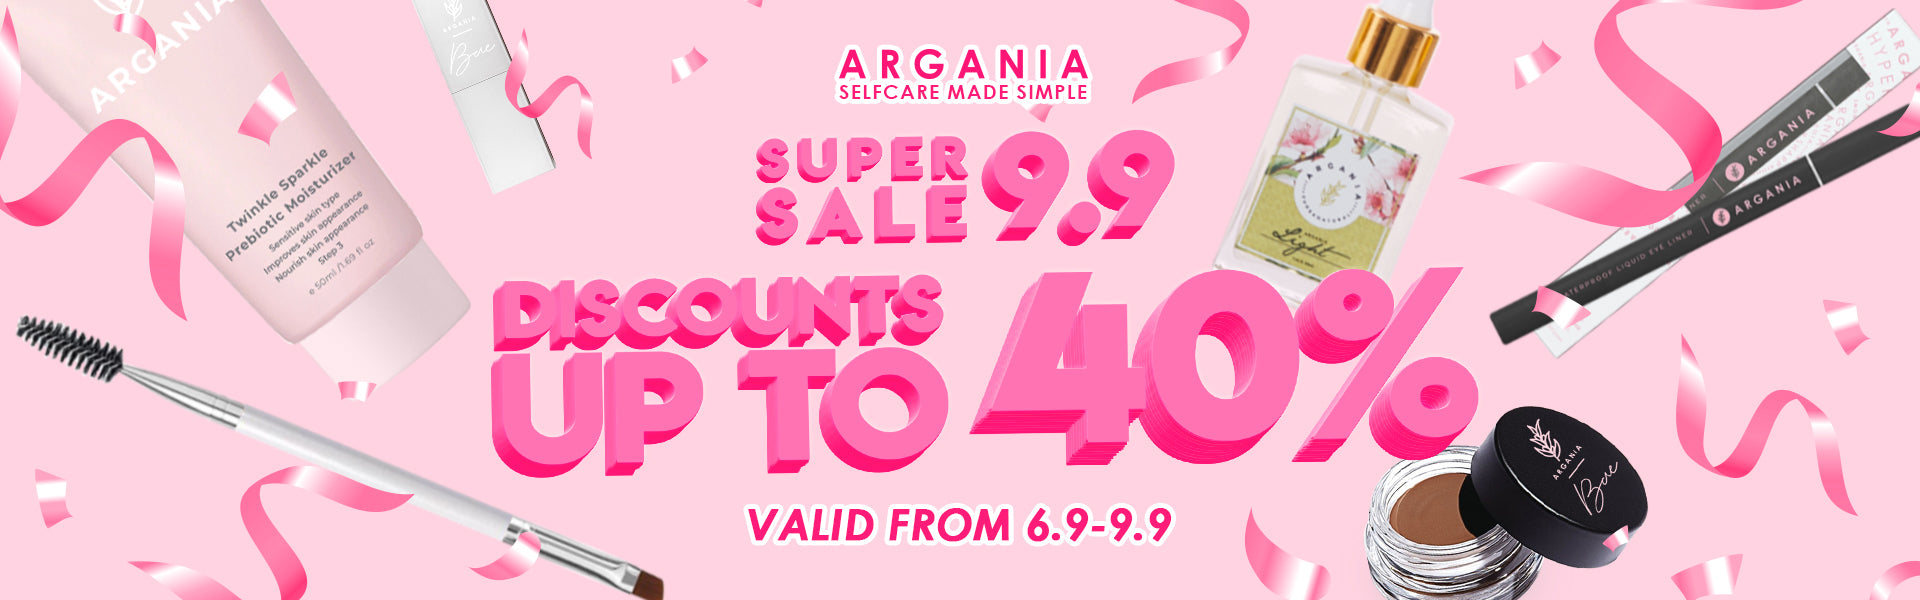 Argania Super 9.9 Sale